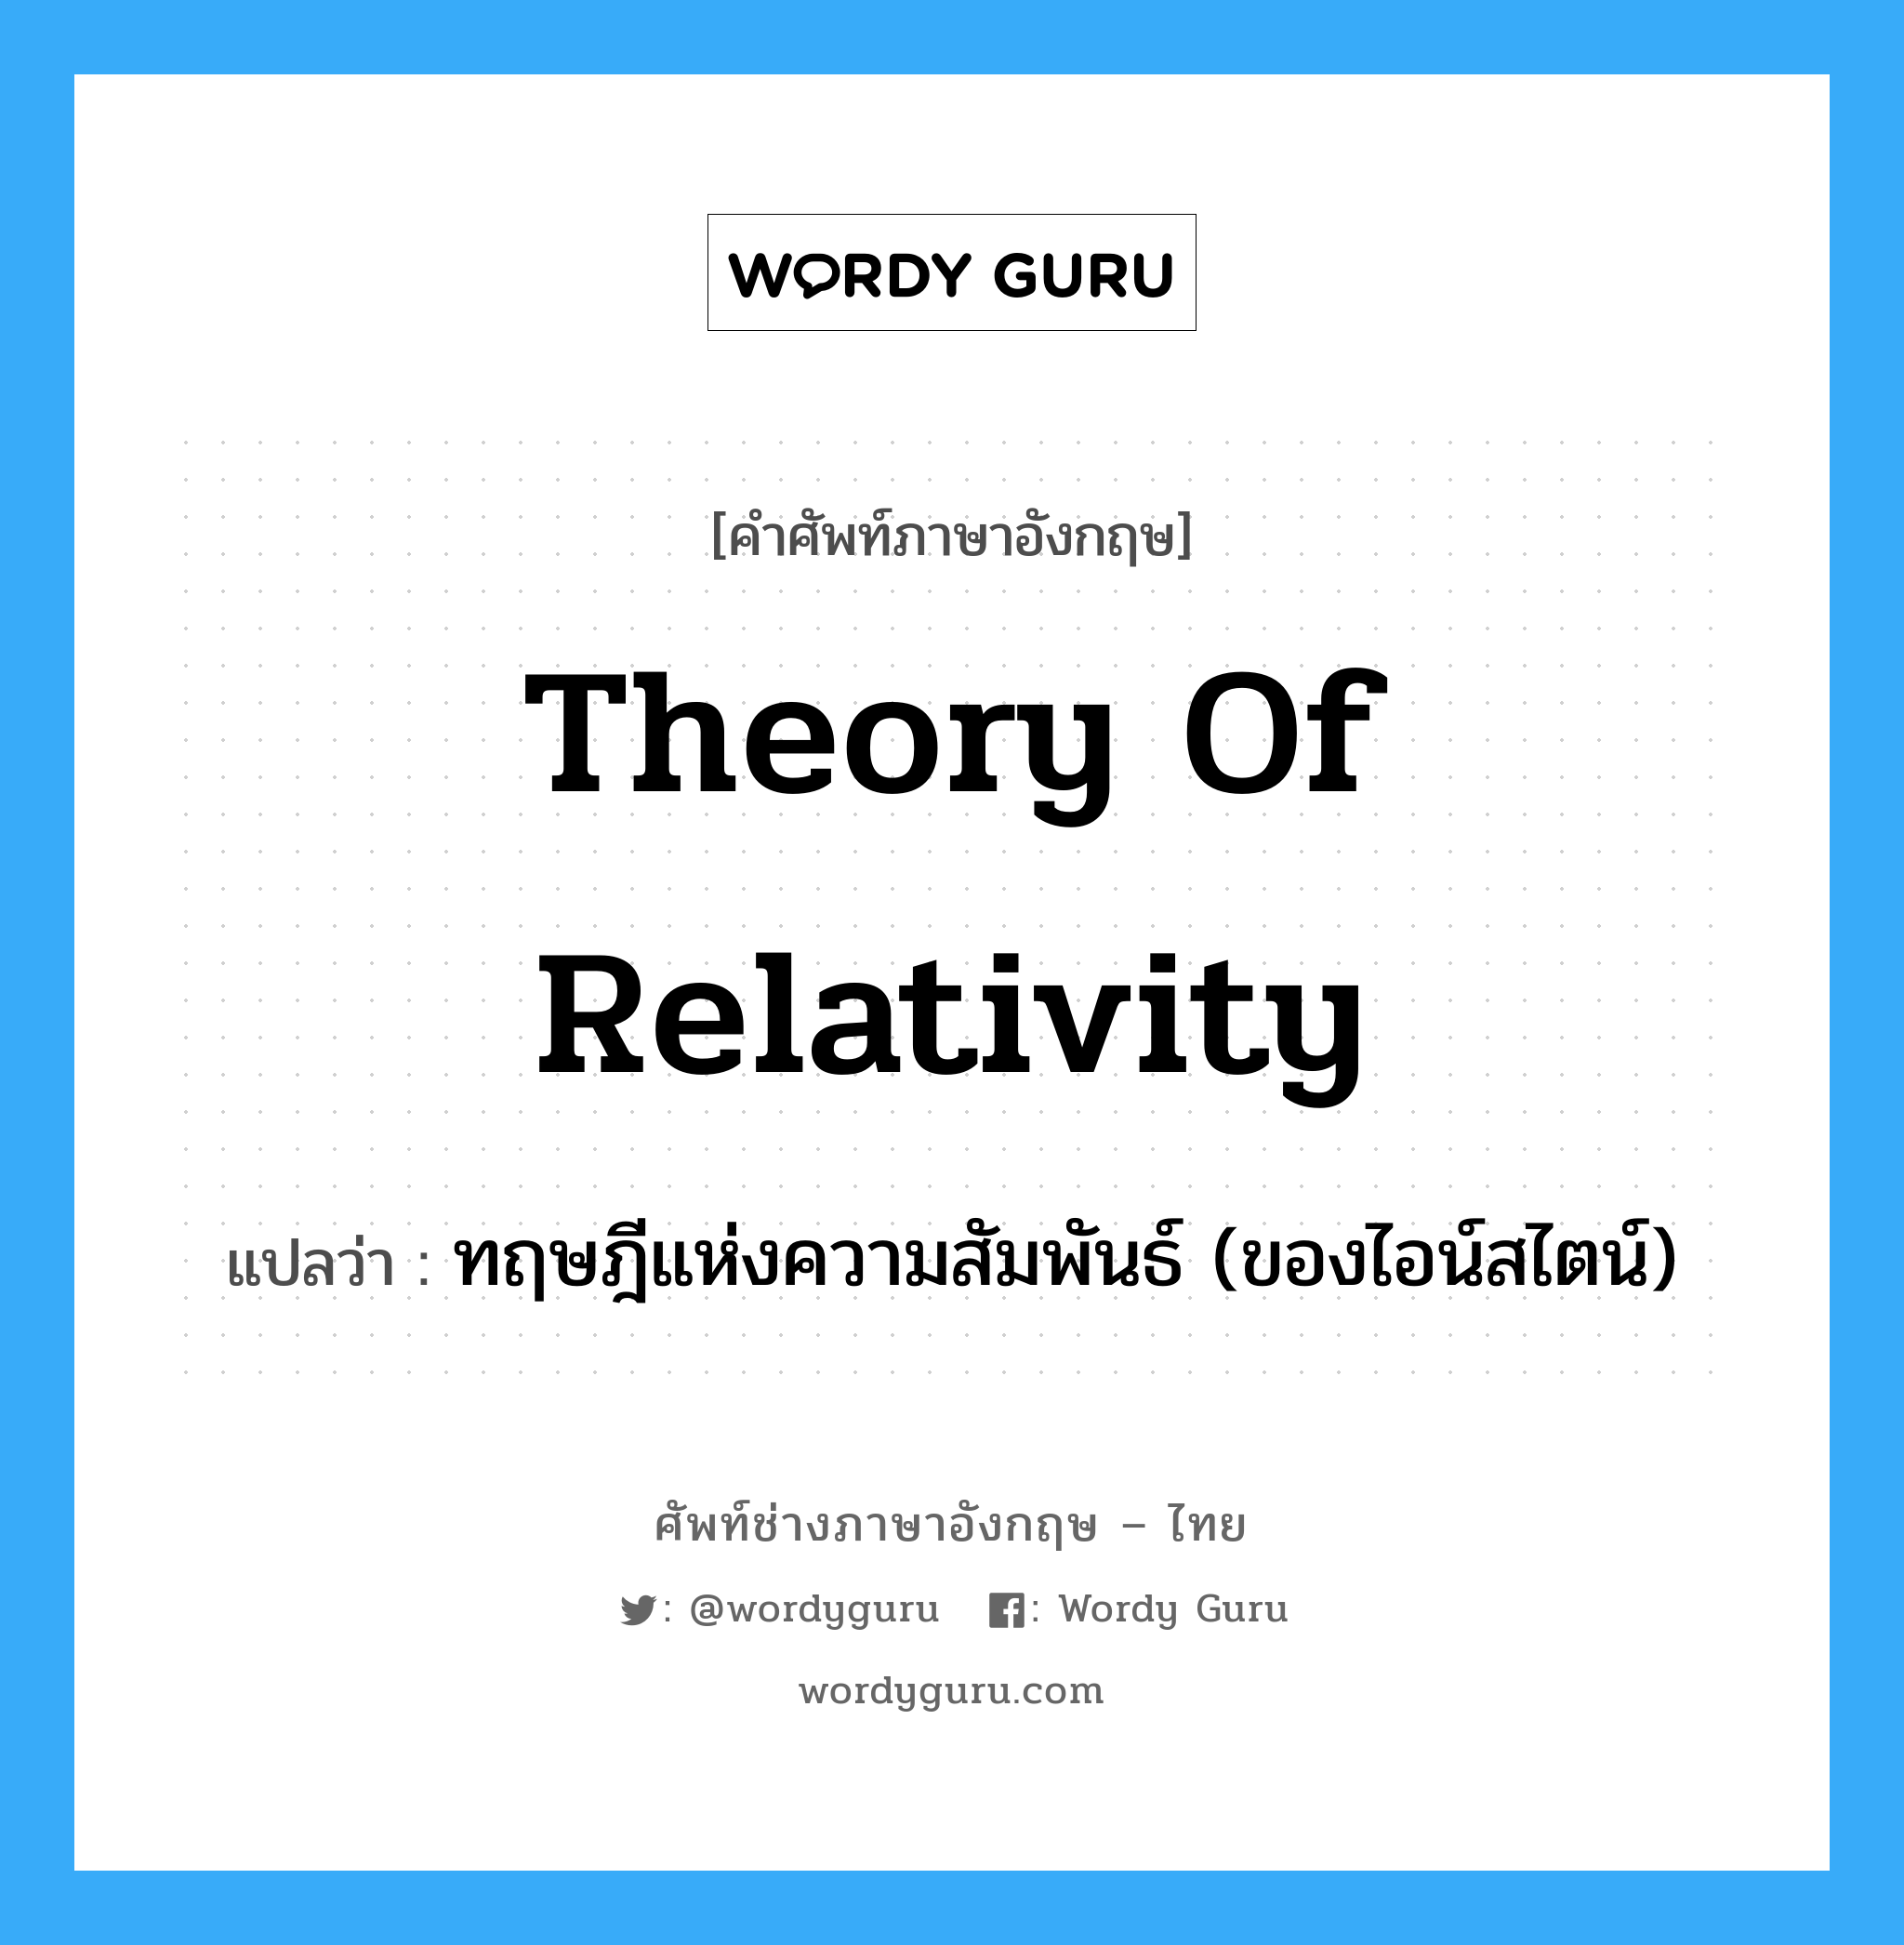 Theory of Relativity แปลว่า?, คำศัพท์ช่างภาษาอังกฤษ - ไทย Theory of Relativity คำศัพท์ภาษาอังกฤษ Theory of Relativity แปลว่า ทฤษฎีแห่งความสัมพันธ์ (ของไอน์สไตน์)